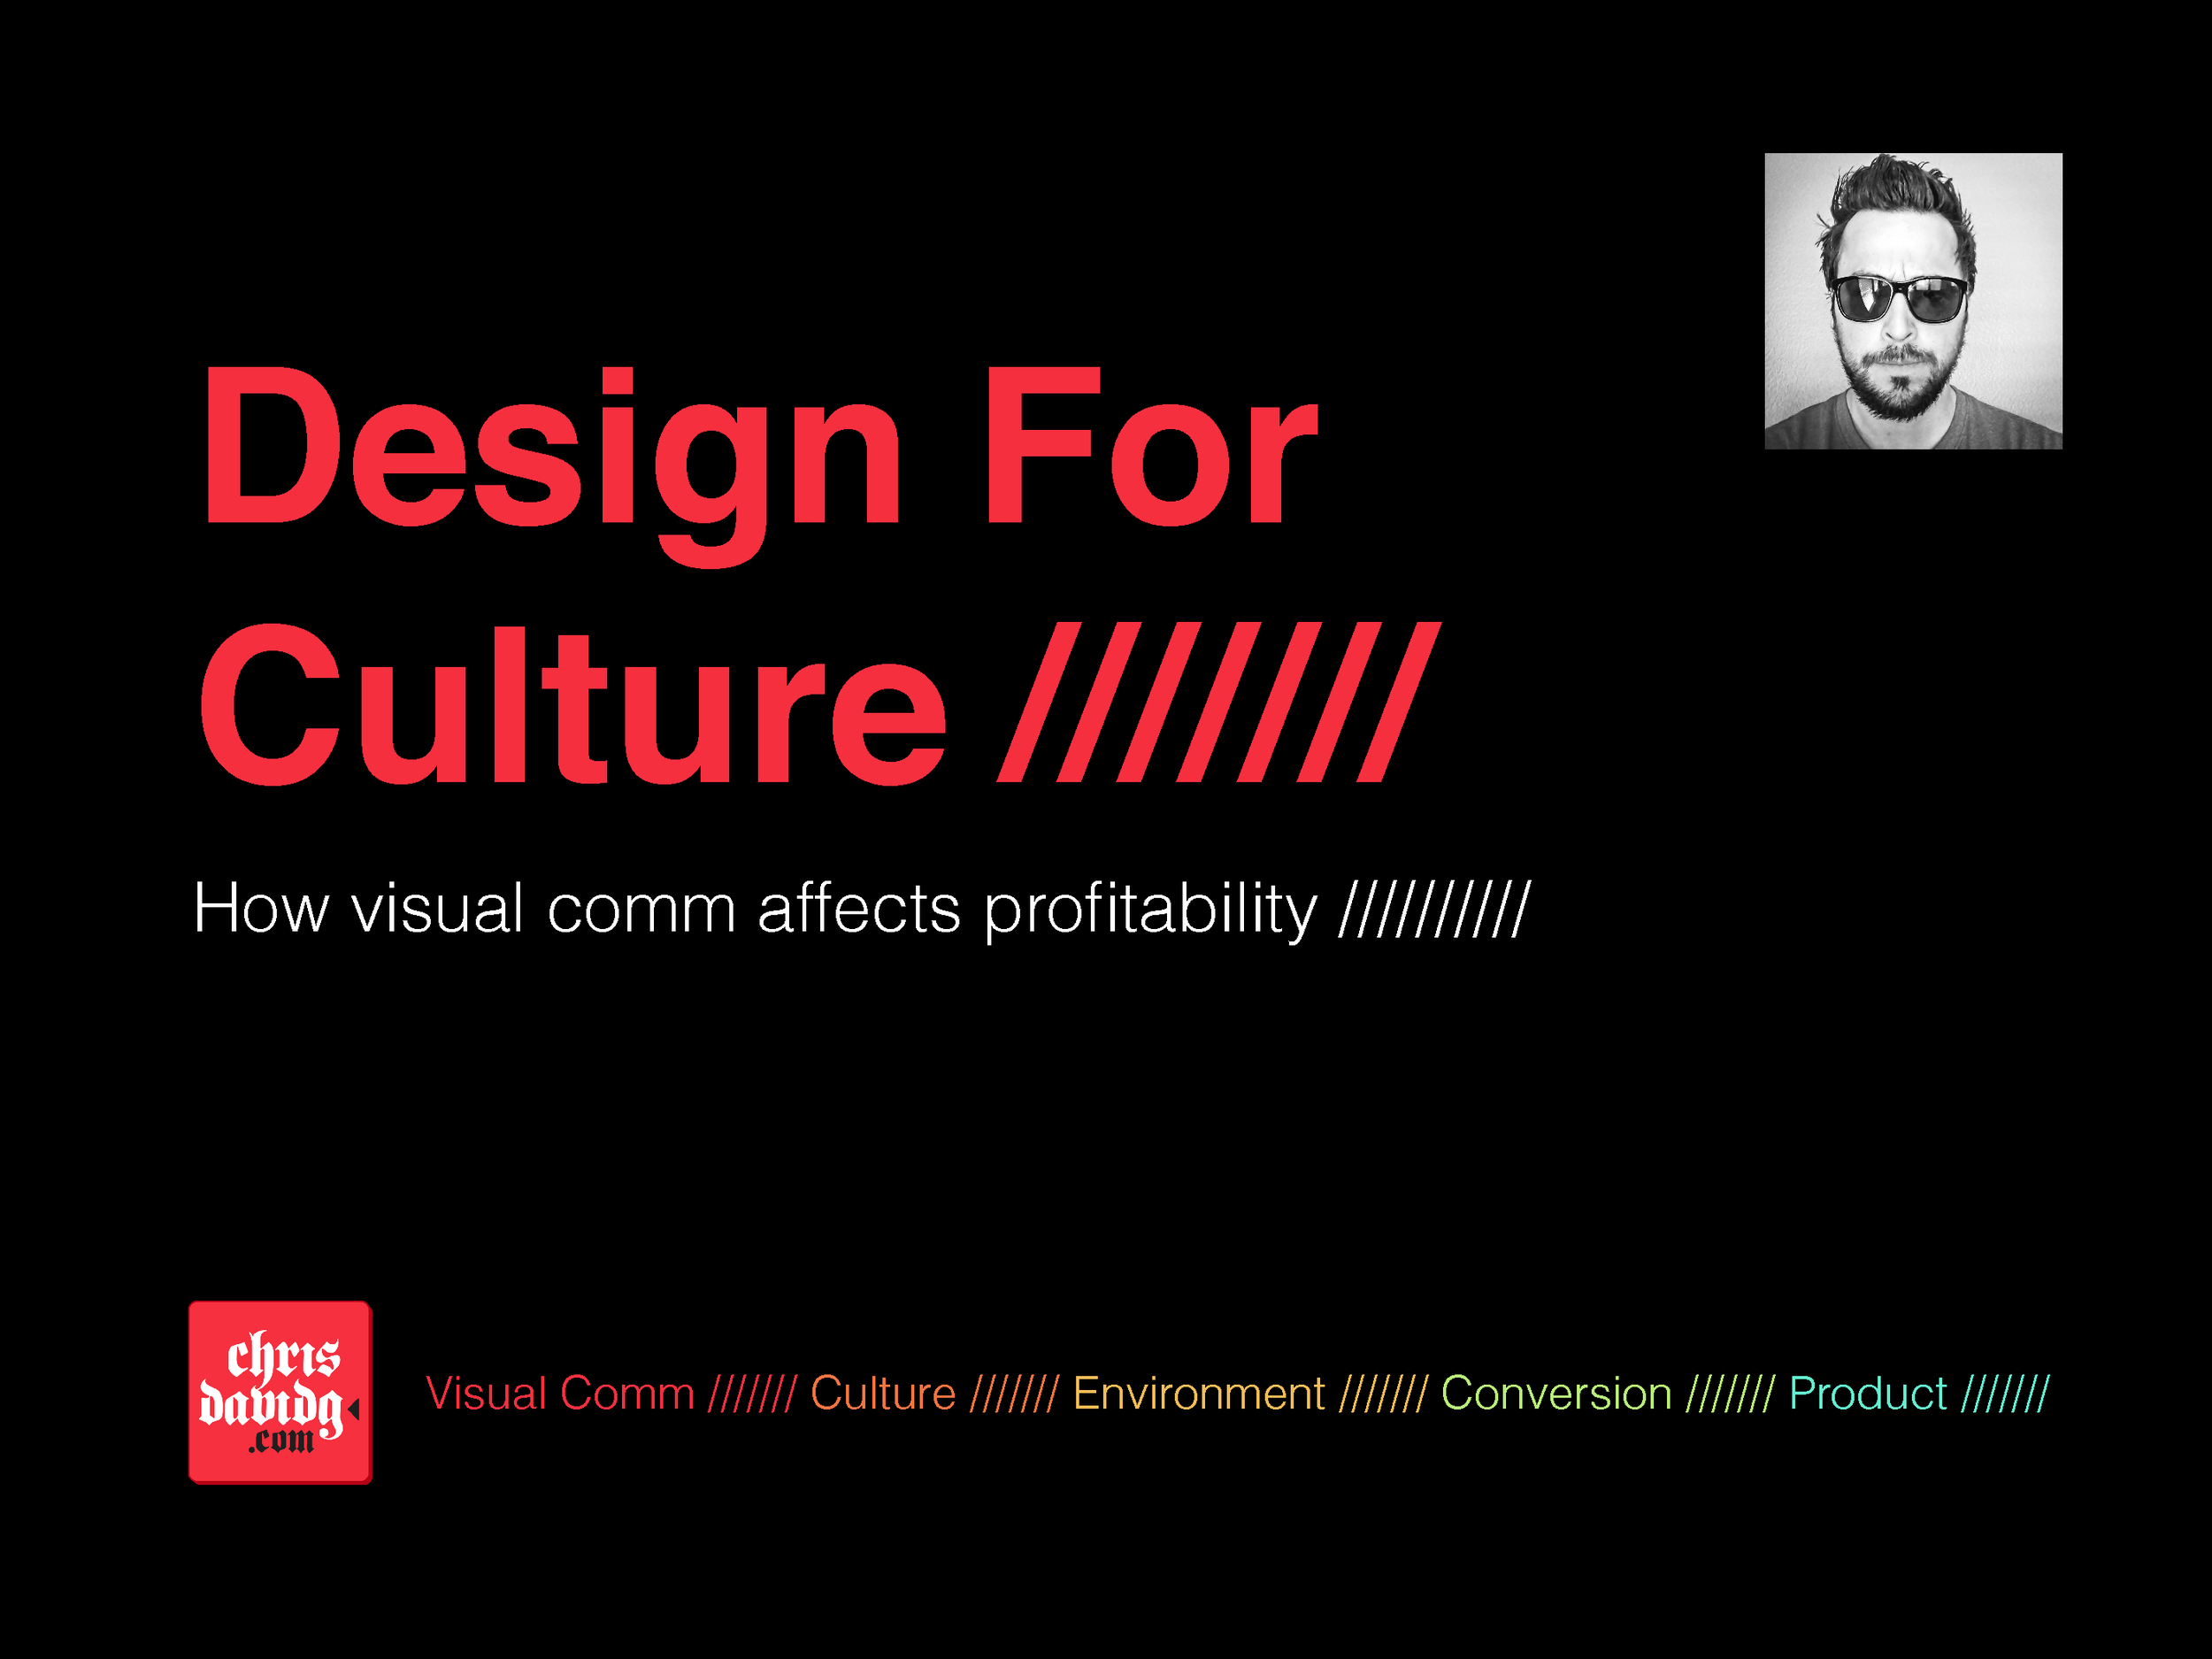 chrisdavidg-designforculture-_Page_01.png